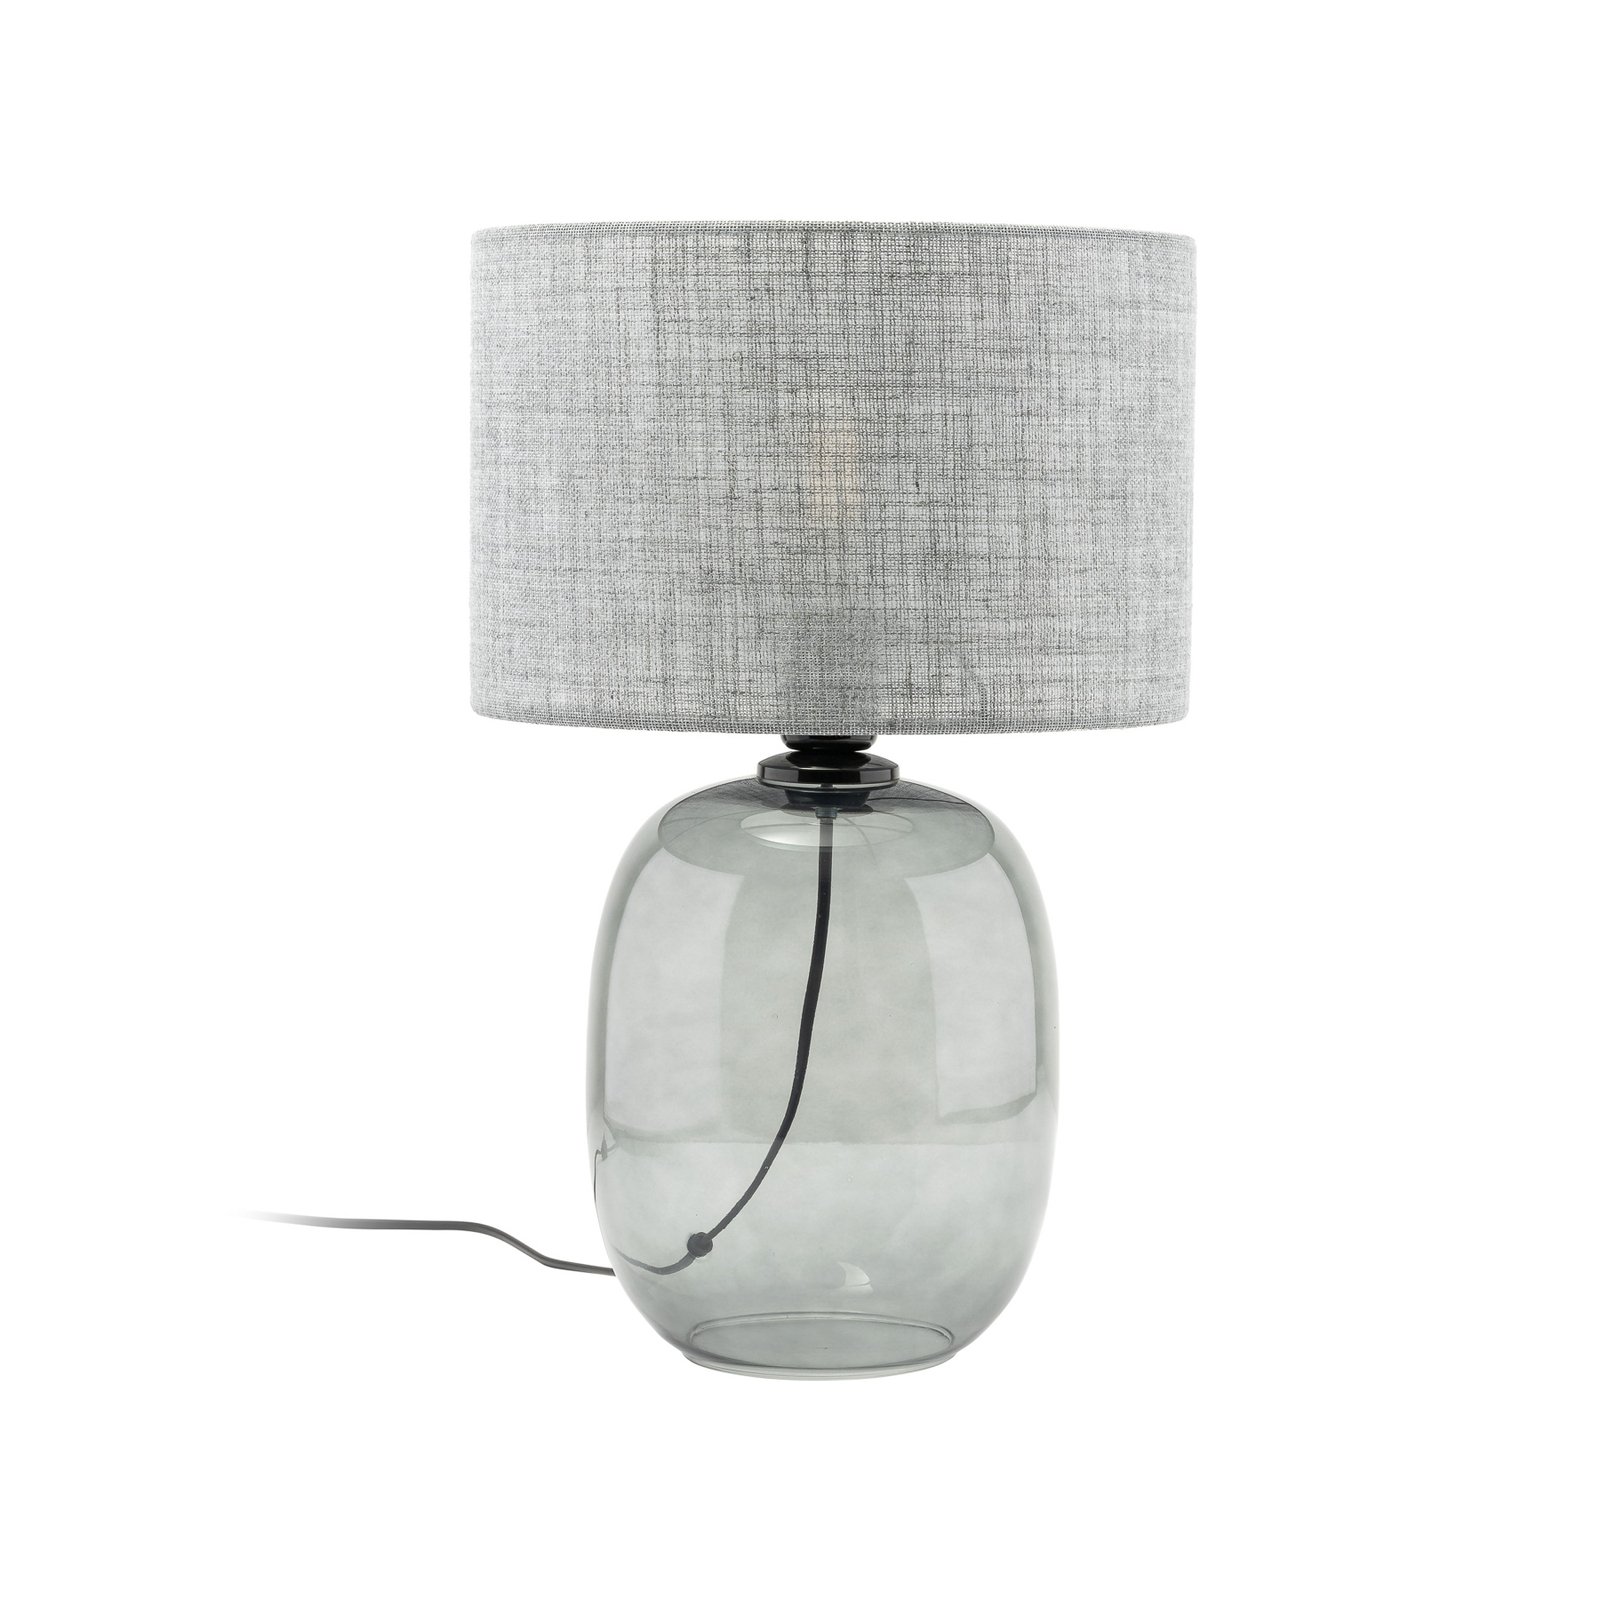 Melody bordlampe, høyde 48 cm, røykgrått glass, grått stoff